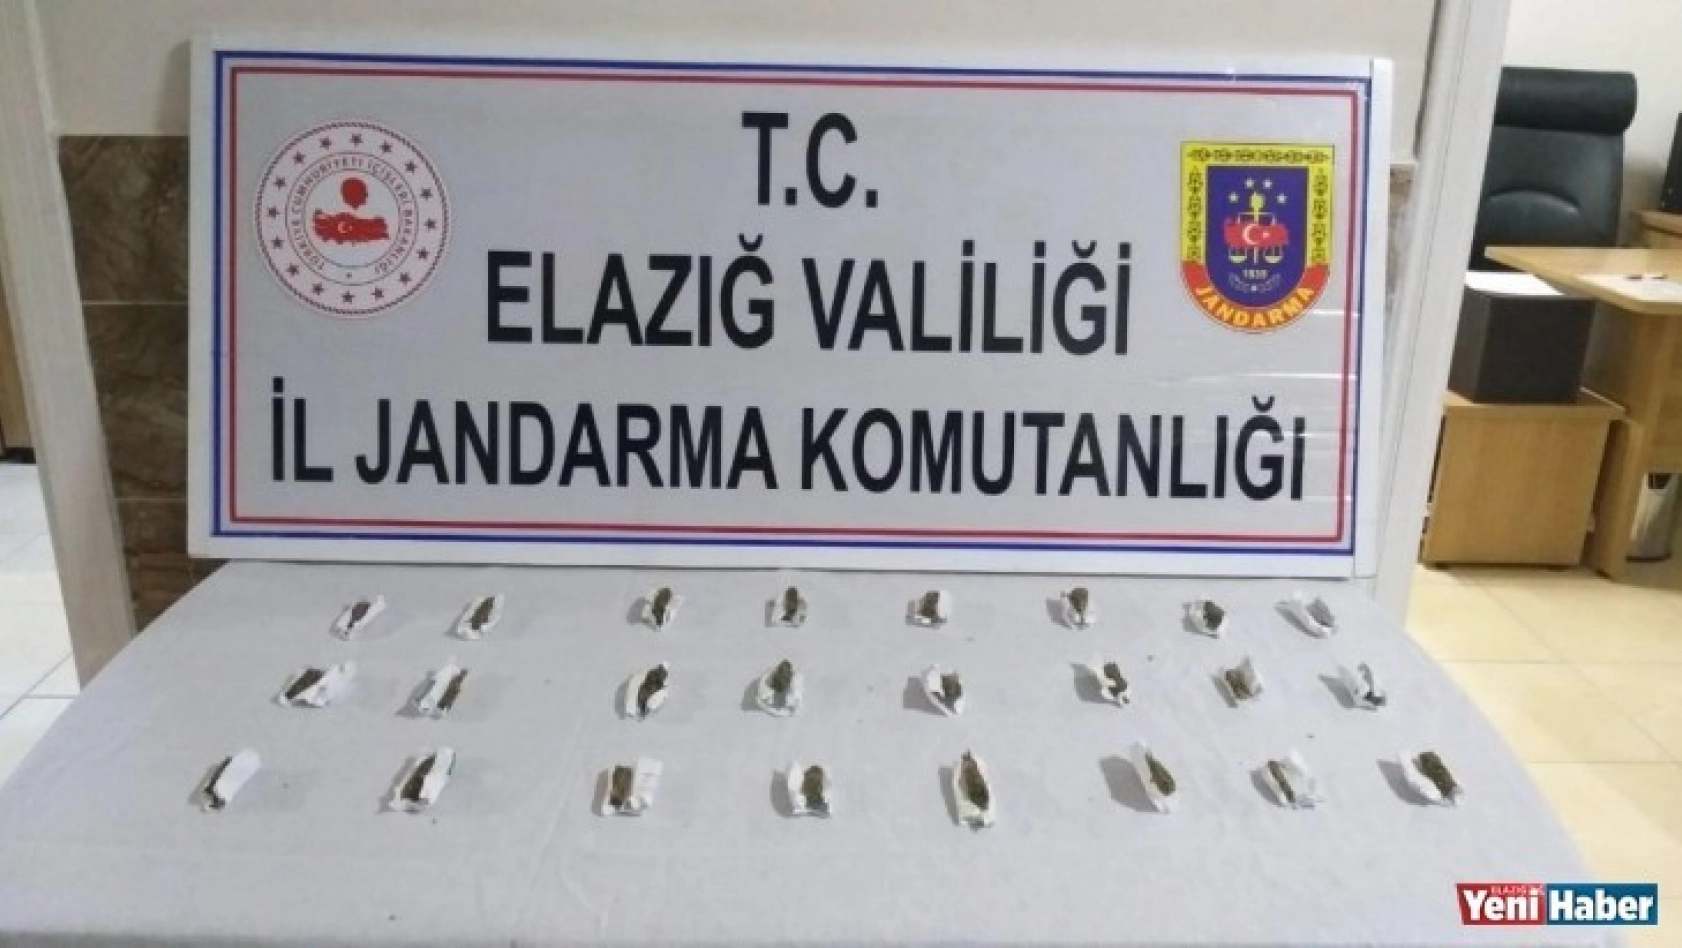 Elazığ'da satışa hazır uyuşturucu paketleri ile 1 şüpheli yakalandı